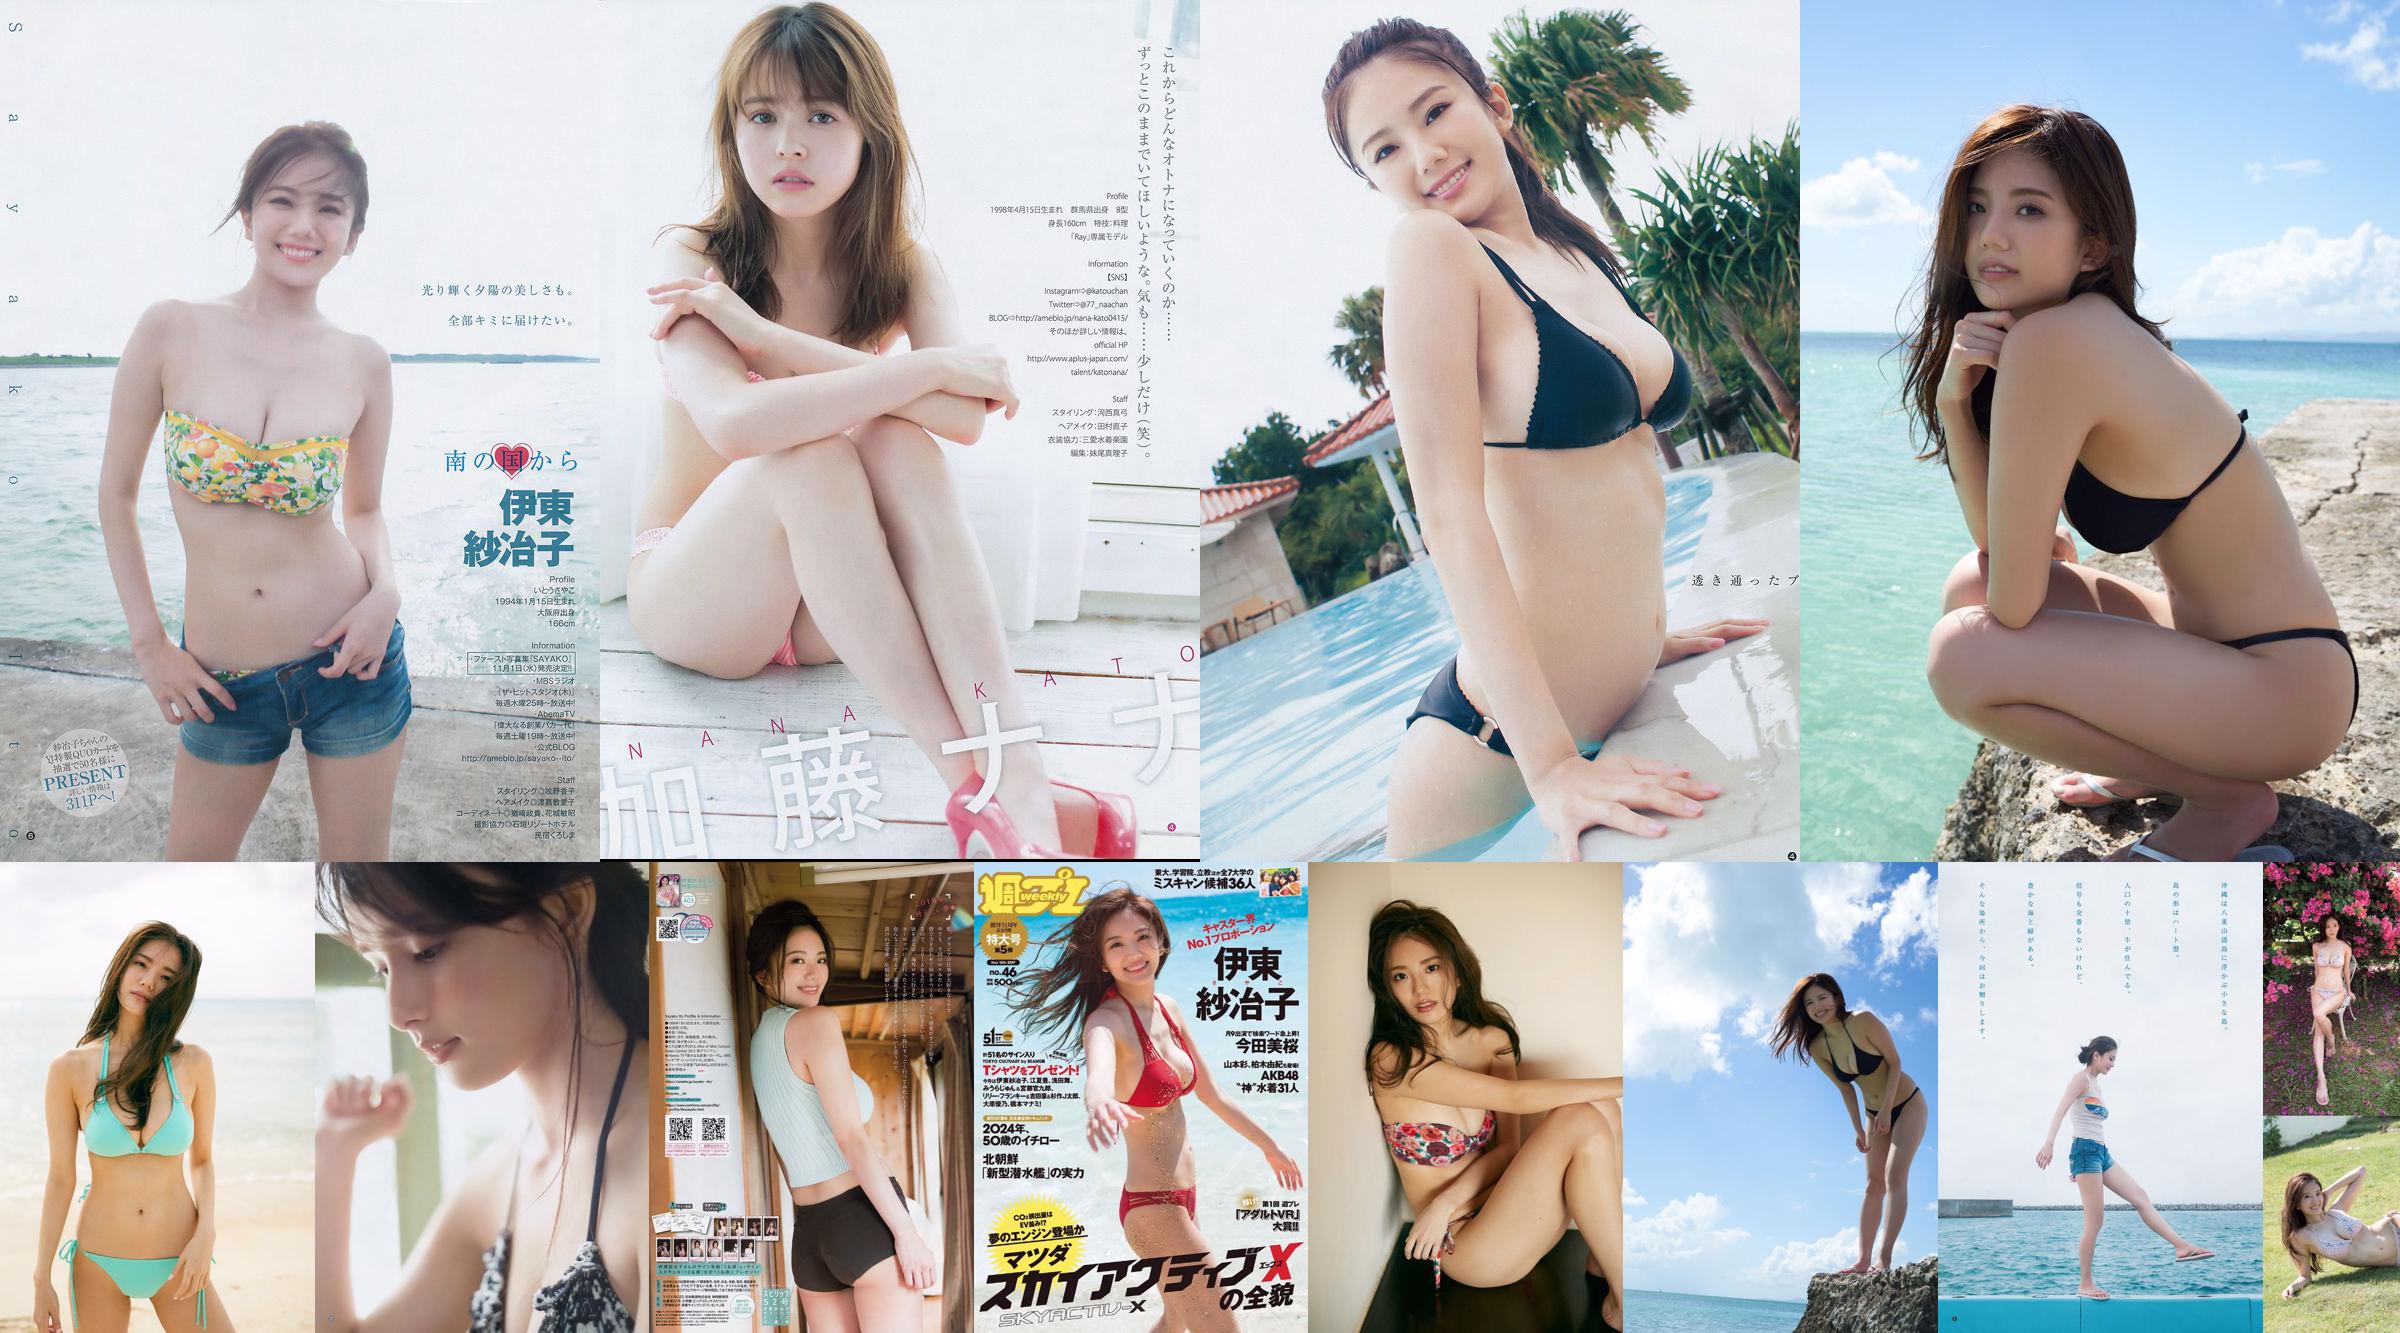 Ito Sayeko, Mima Reiko, Sugimoto Yumi, Sato Reina, Yoshiki りさ Toyama Akiko, Naninao [Weekly Playboy] 2016 No.36 Photo Magazine No.0db218 Seite 1